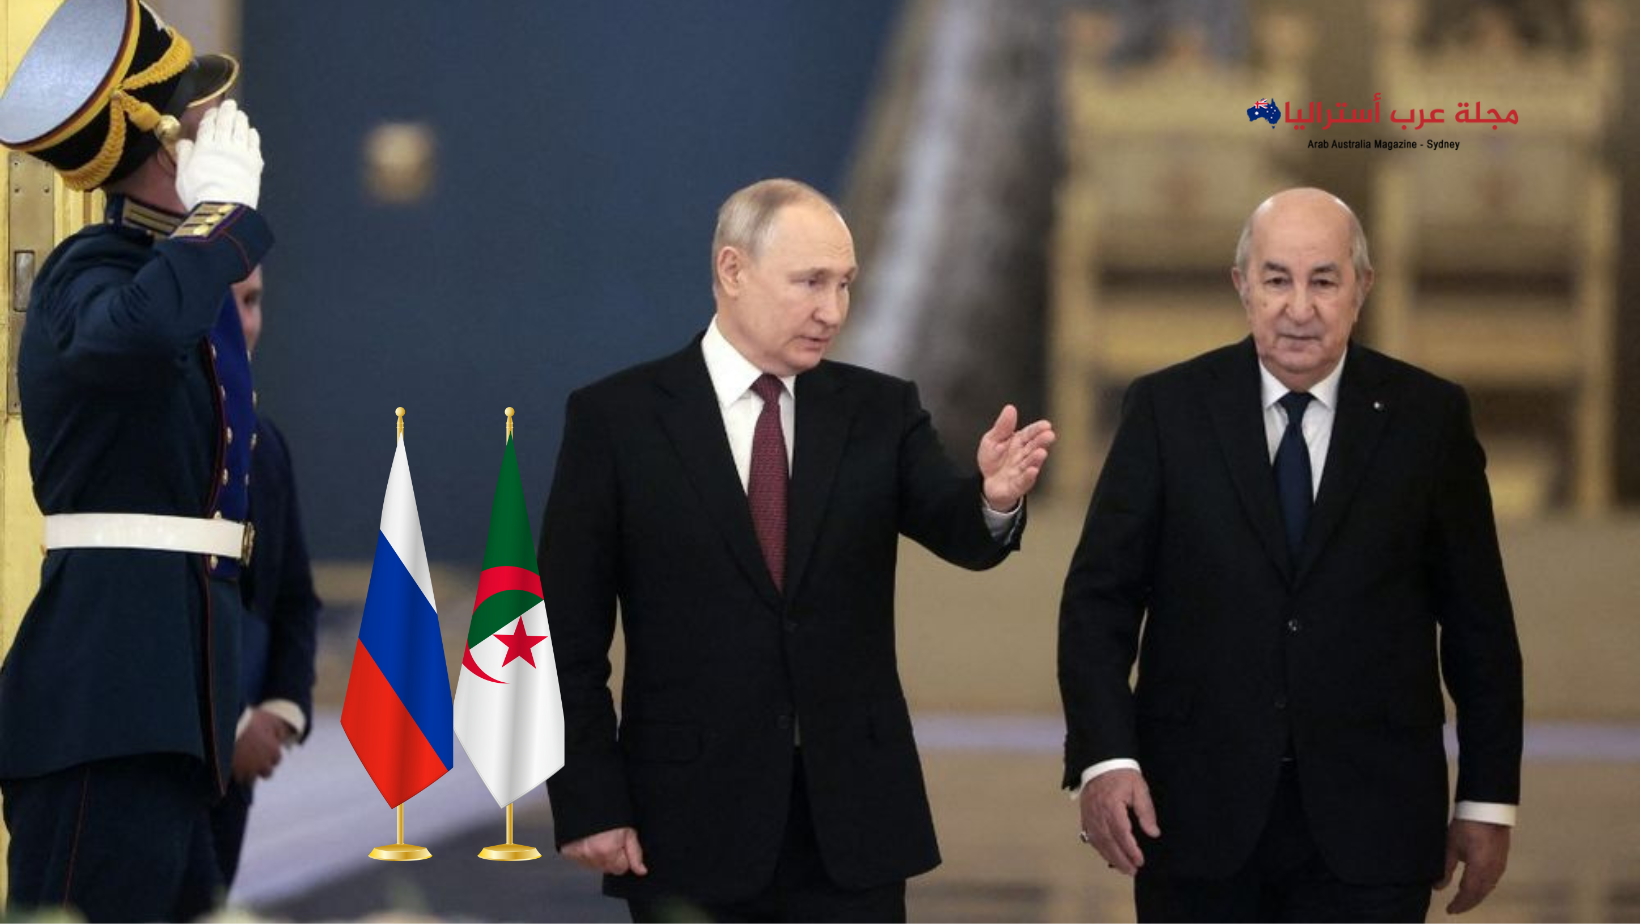 علي شندب- الجزائر تفضل روسيا والبريكس لا فرنسا والغرب